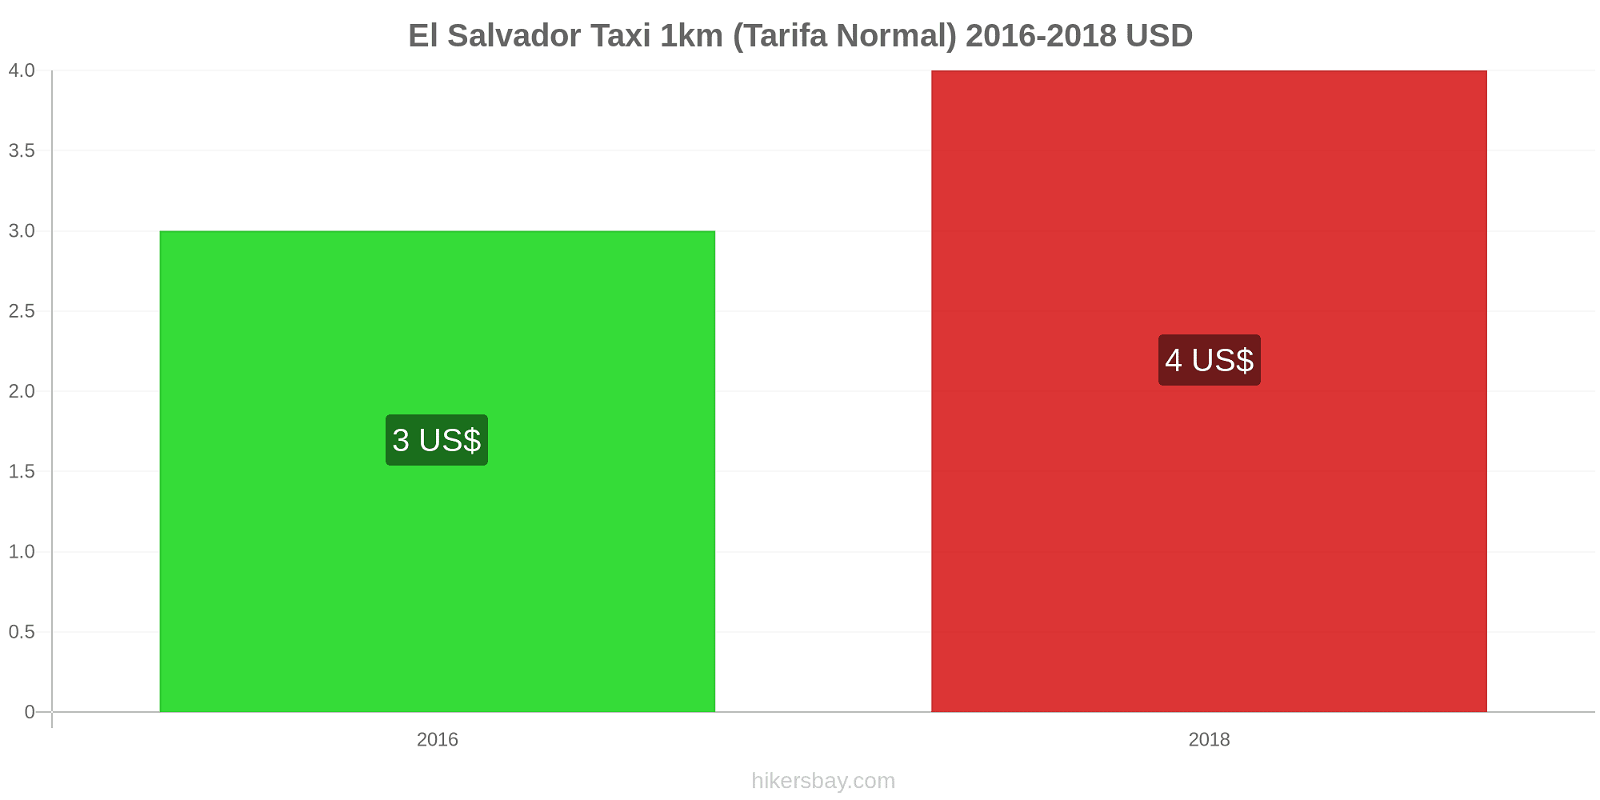 El Salvador cambios de precios Taxi 1km (tarifa normal) hikersbay.com